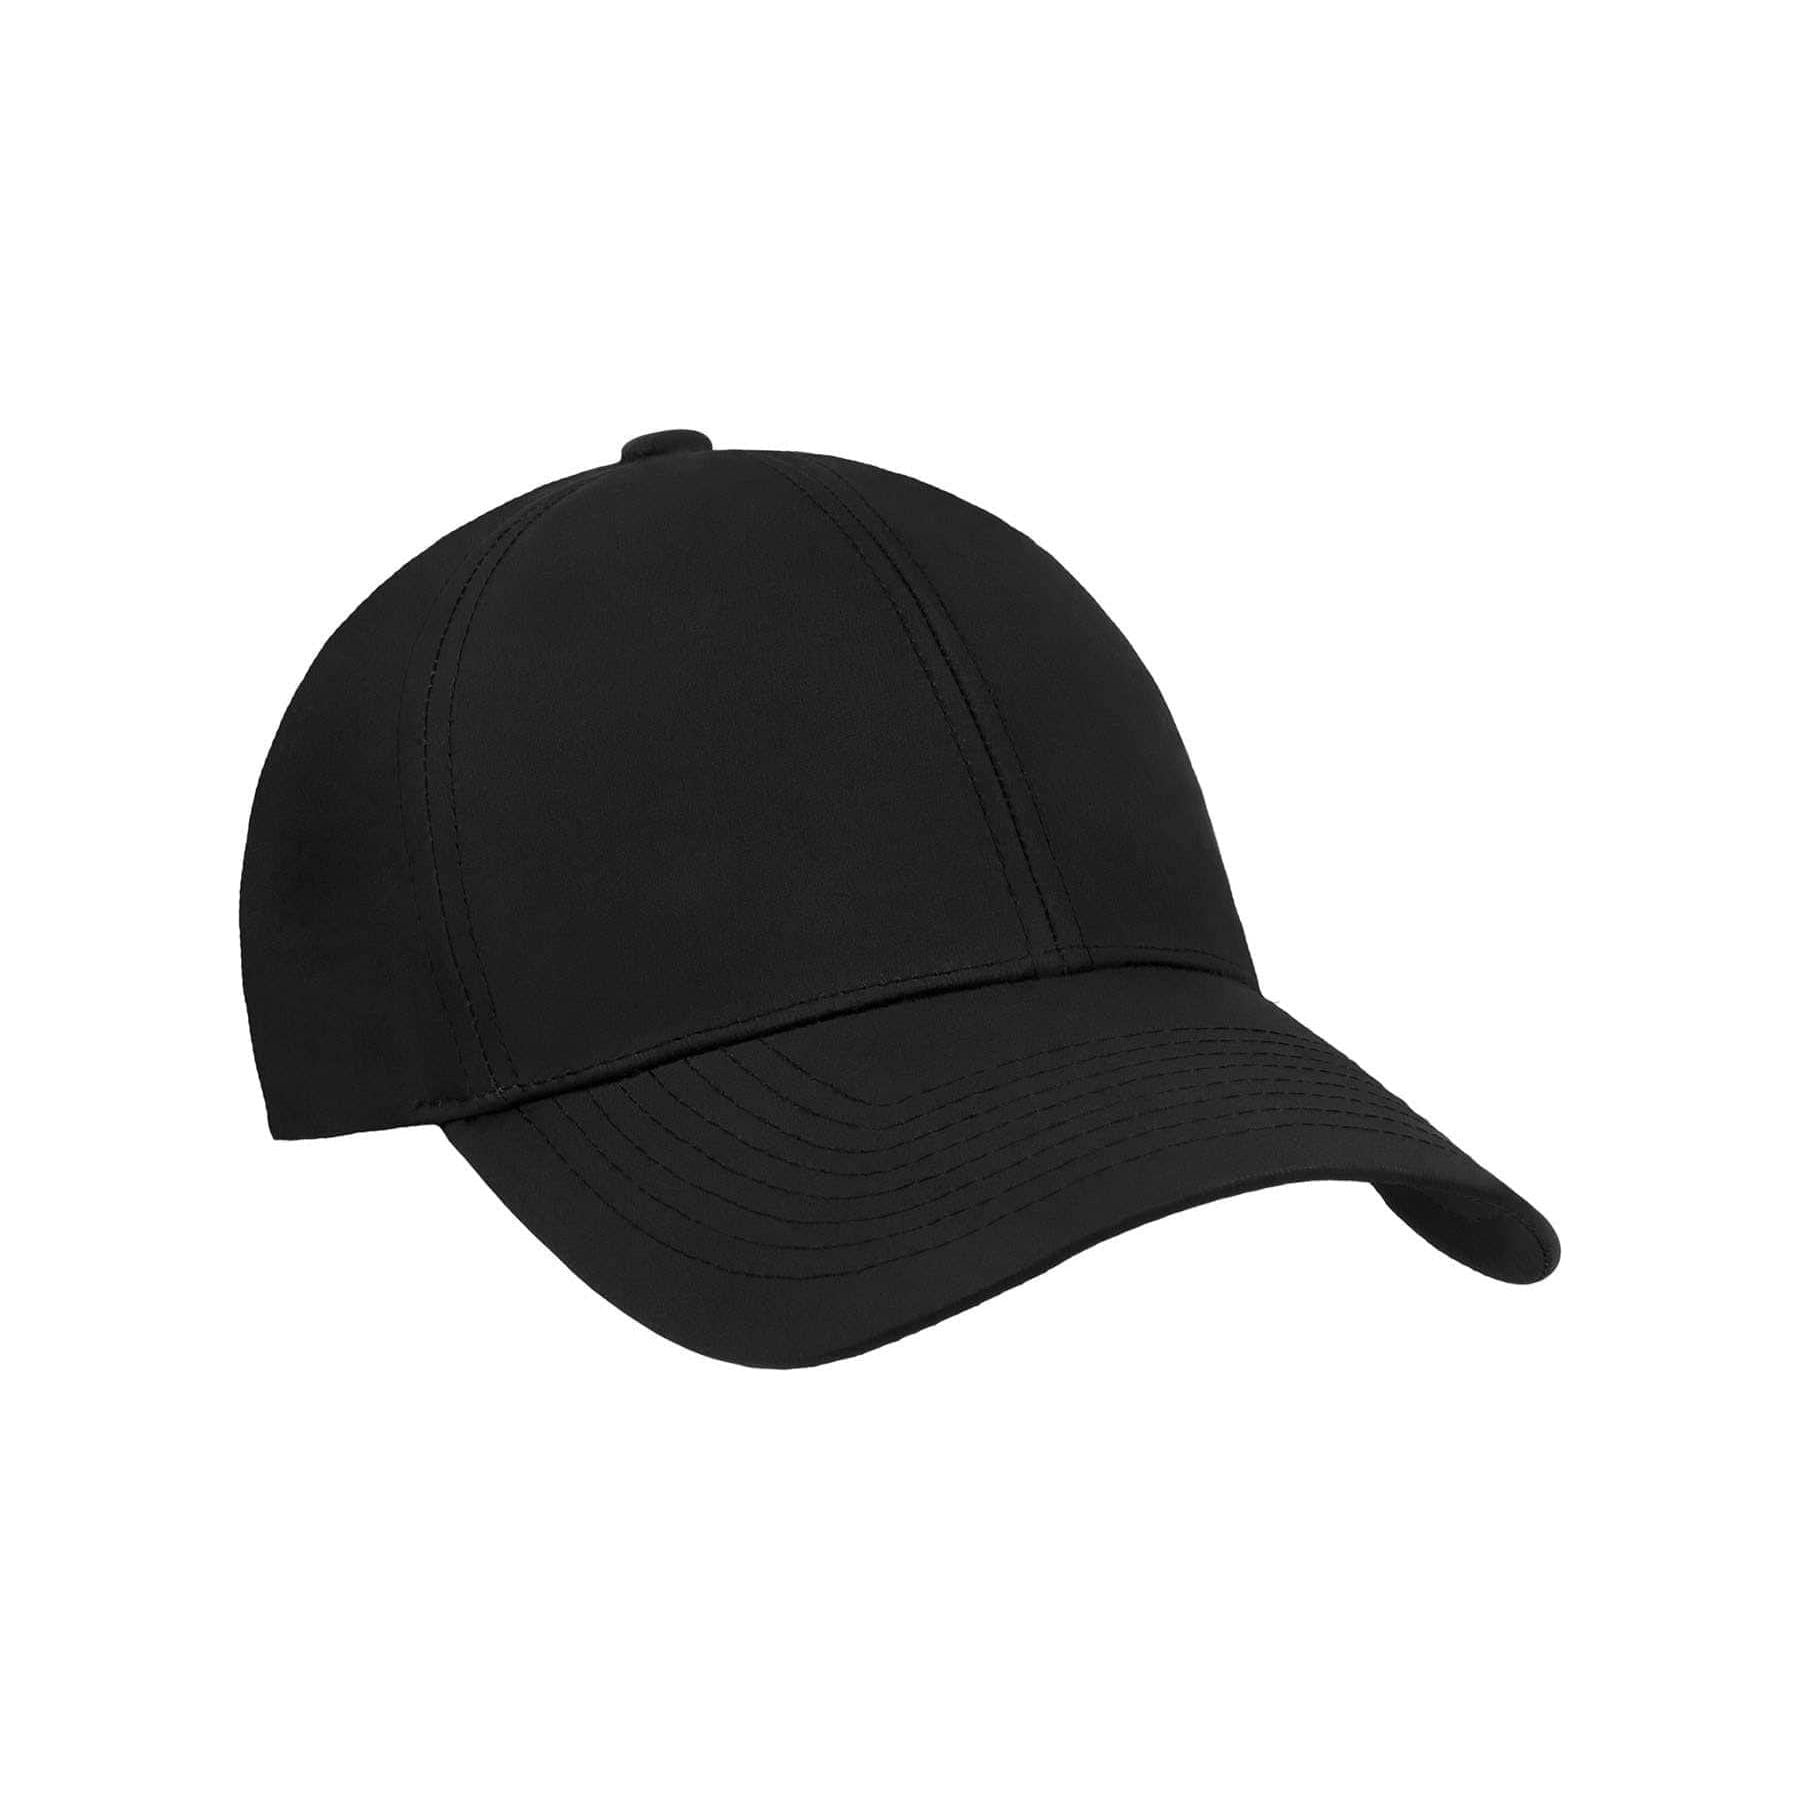 Sports Series Cap, Black Medium